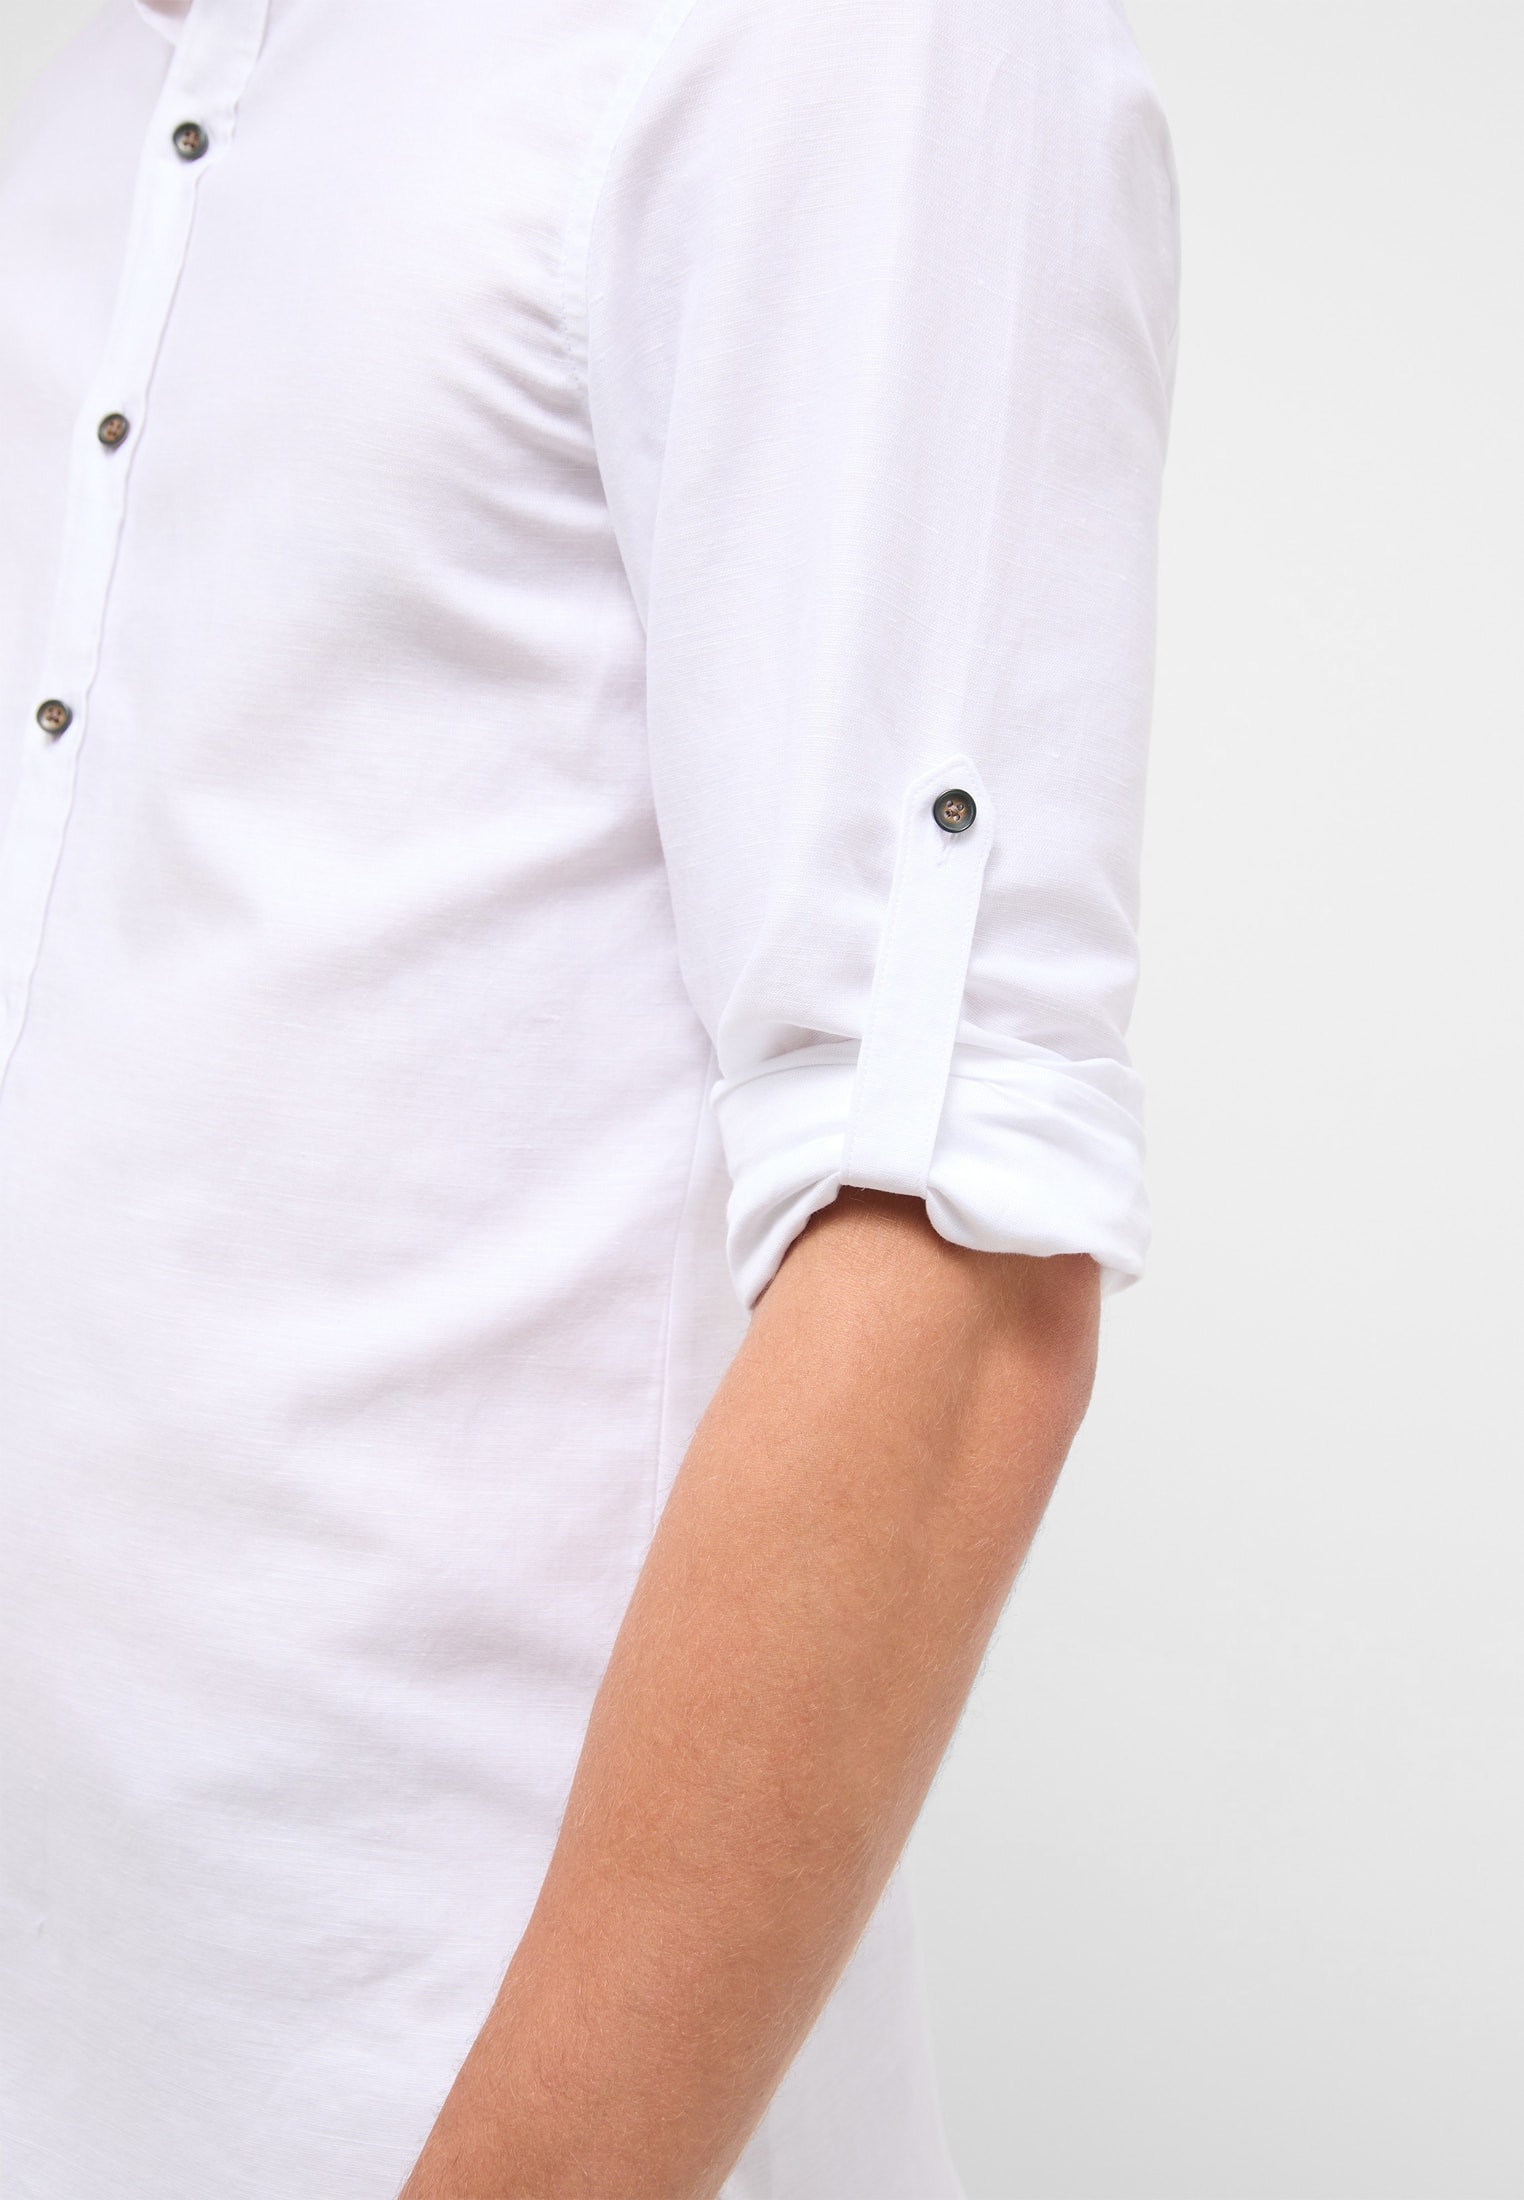 SLIM FIT Linen unifarben | | | | in Langarm weiß weiß Shirt 1SH12593-00-01-40-1/1 40